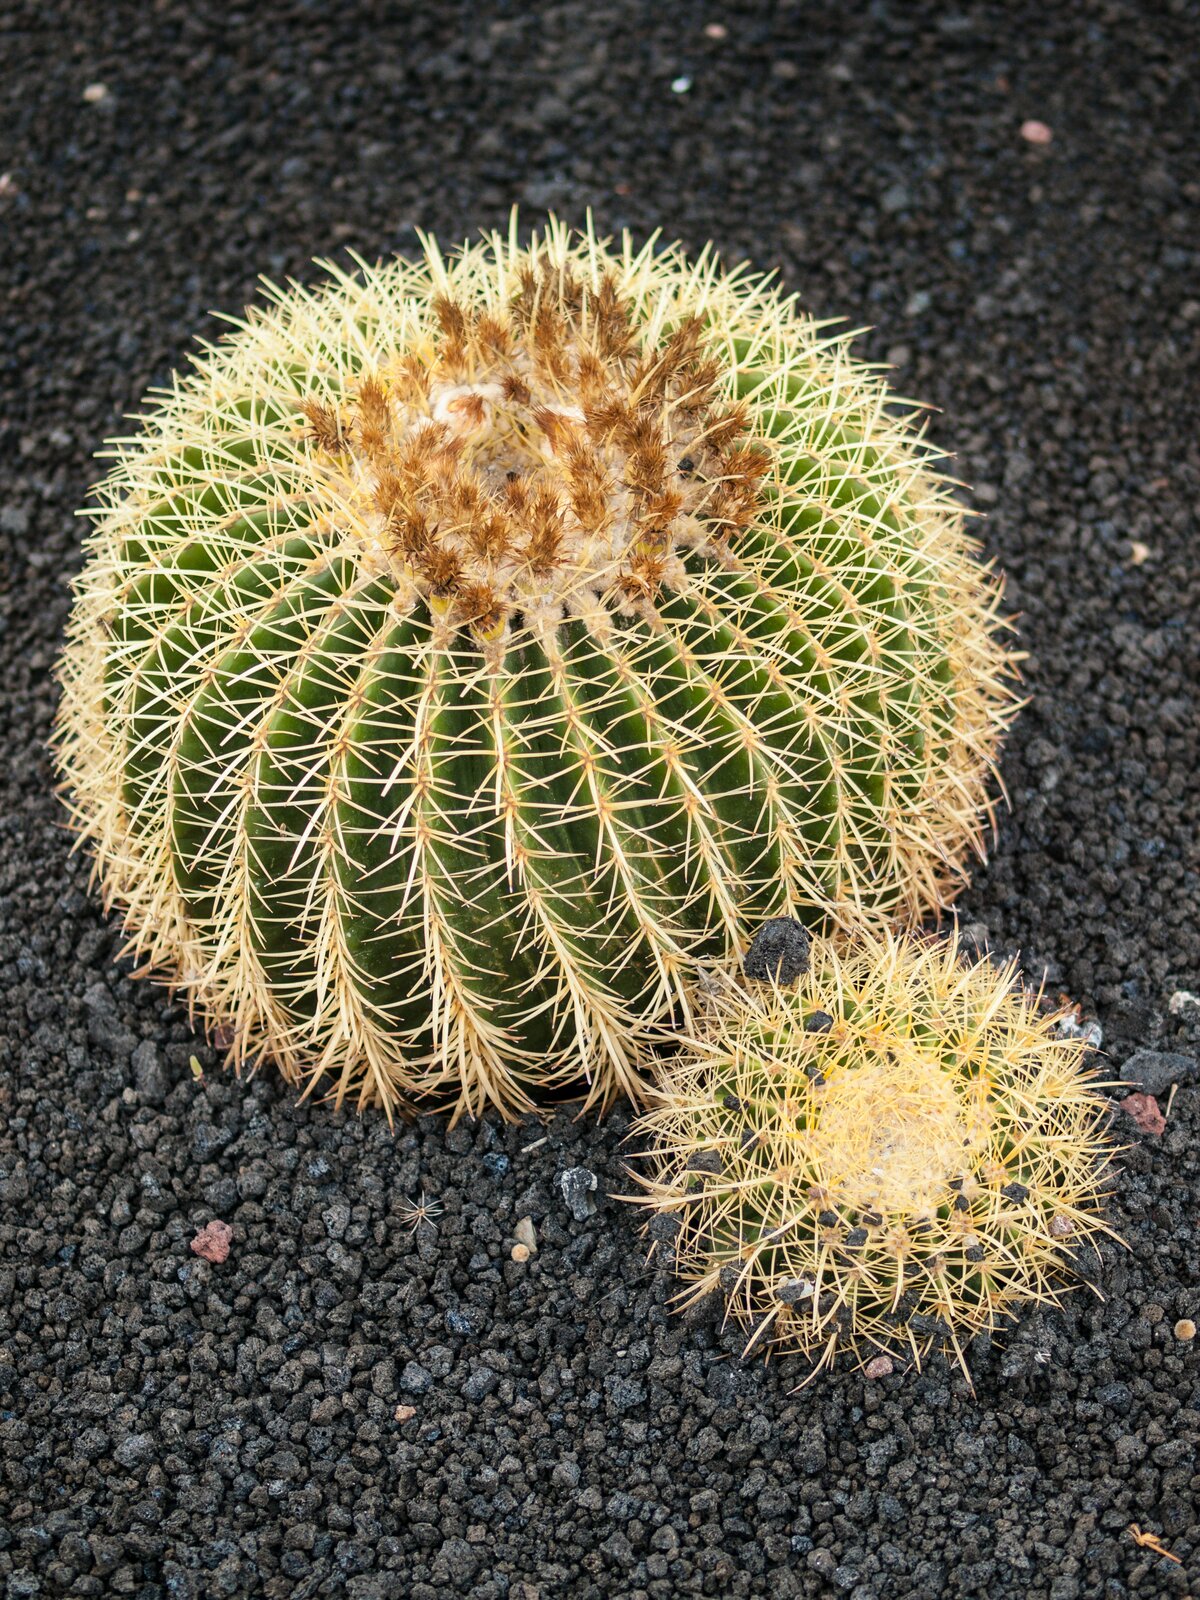 Kulista łodyga kaktusa pozbawiona blaszek liściowych ma małą powierzchnię parowania